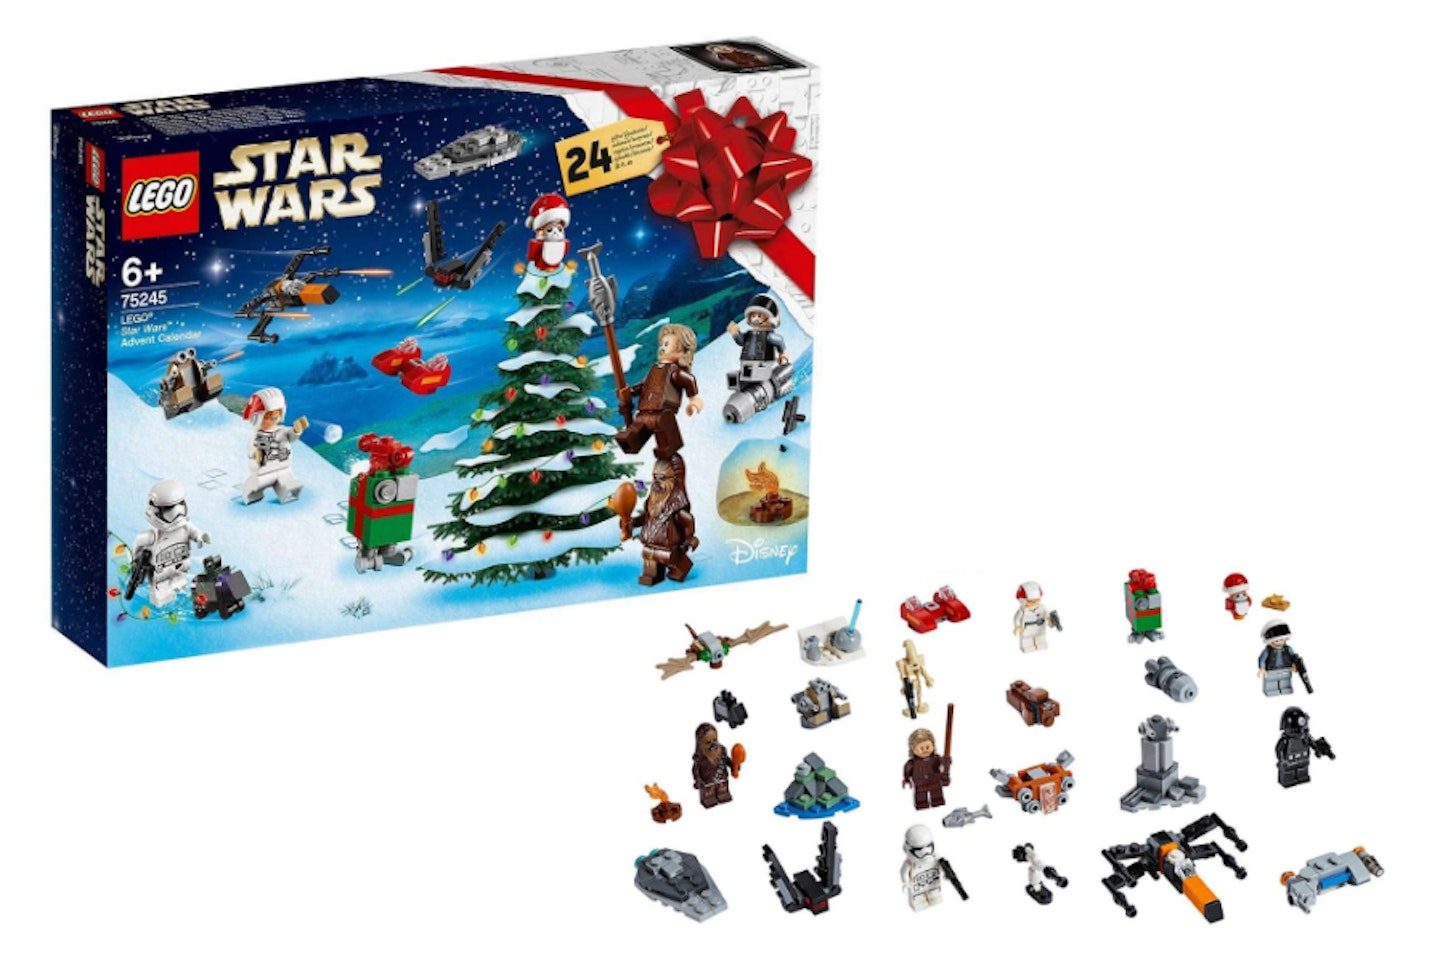 Lego Star Wars Advent Calendar, £24.94